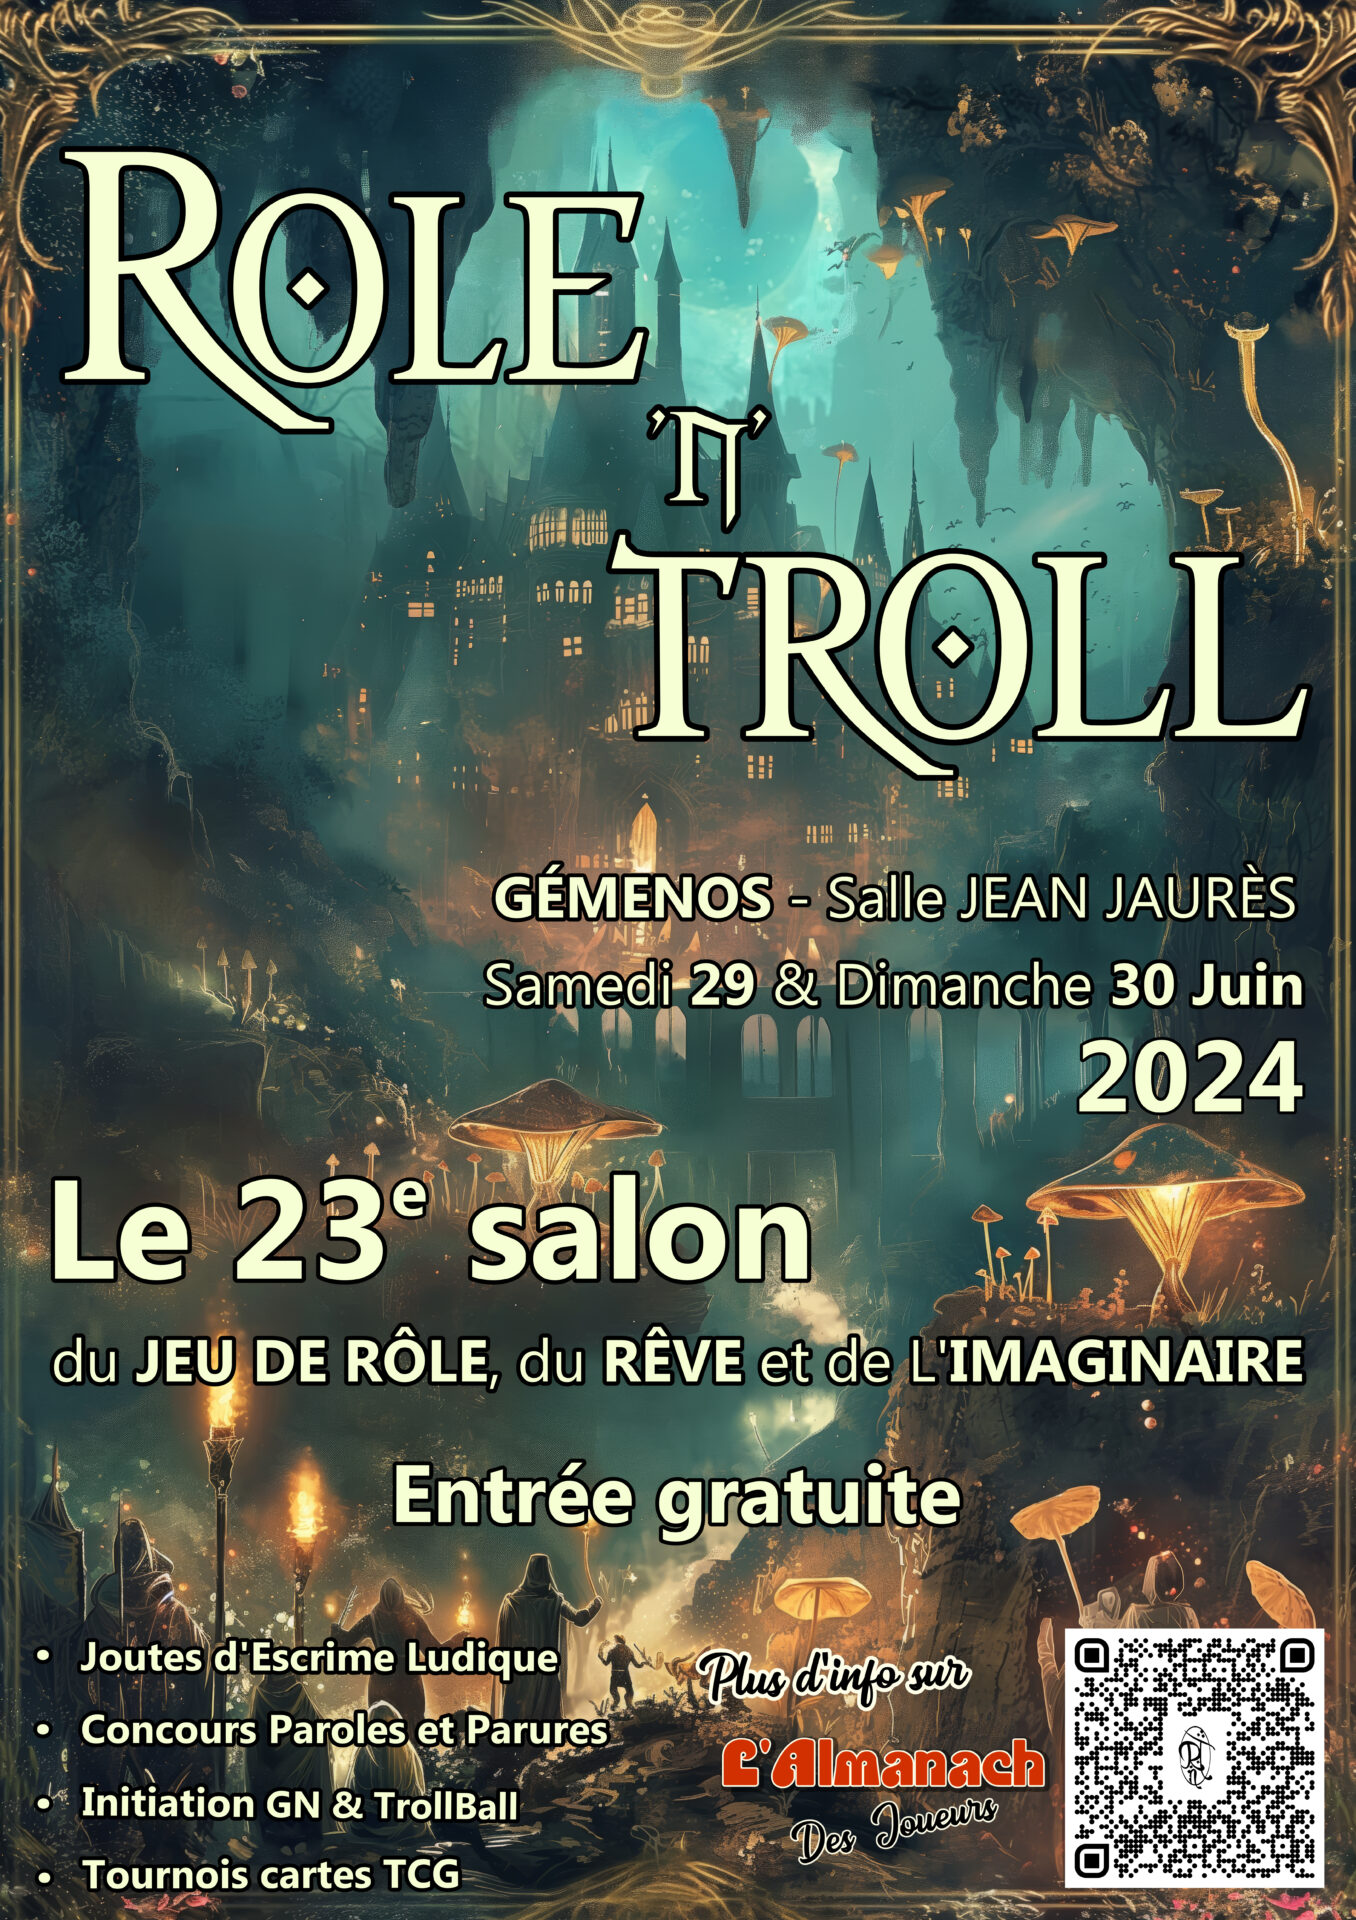 Affiche du Salon du jeu de rôle, du rêve et de l'imaginaire 2024